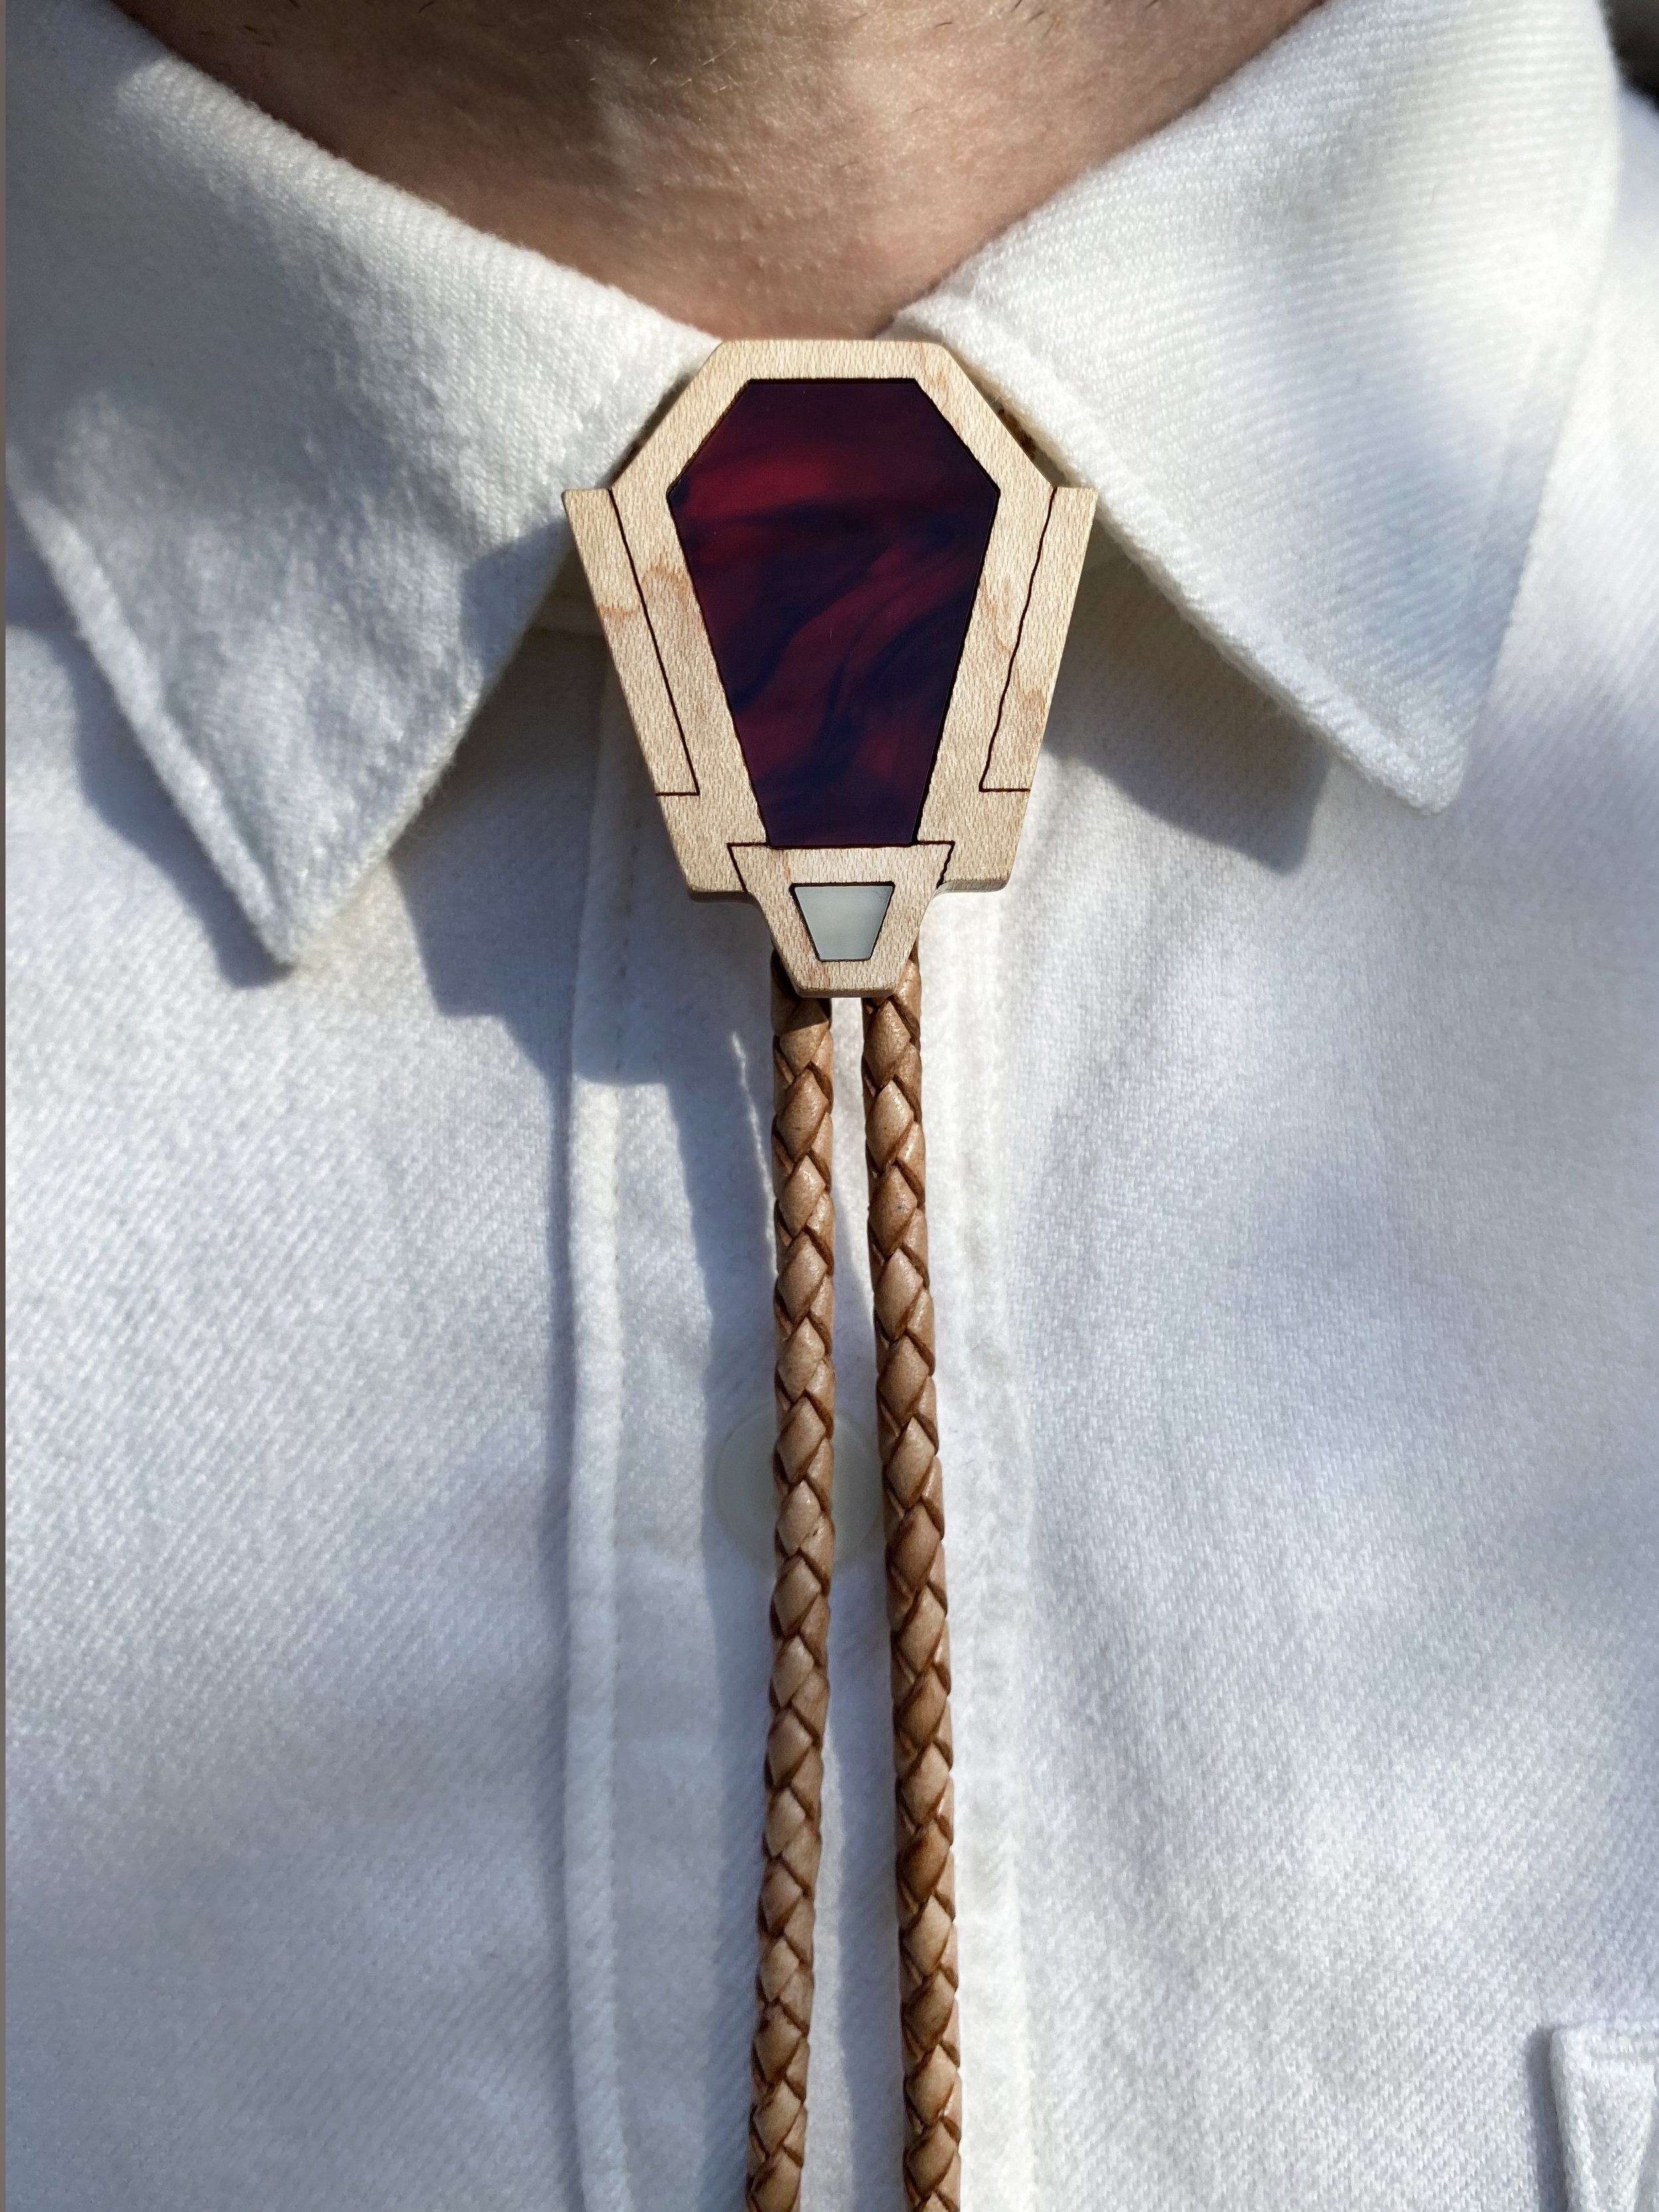 Southwest Bolo Tie | Formal & Casual Neckties | MINIMA MAXIMA